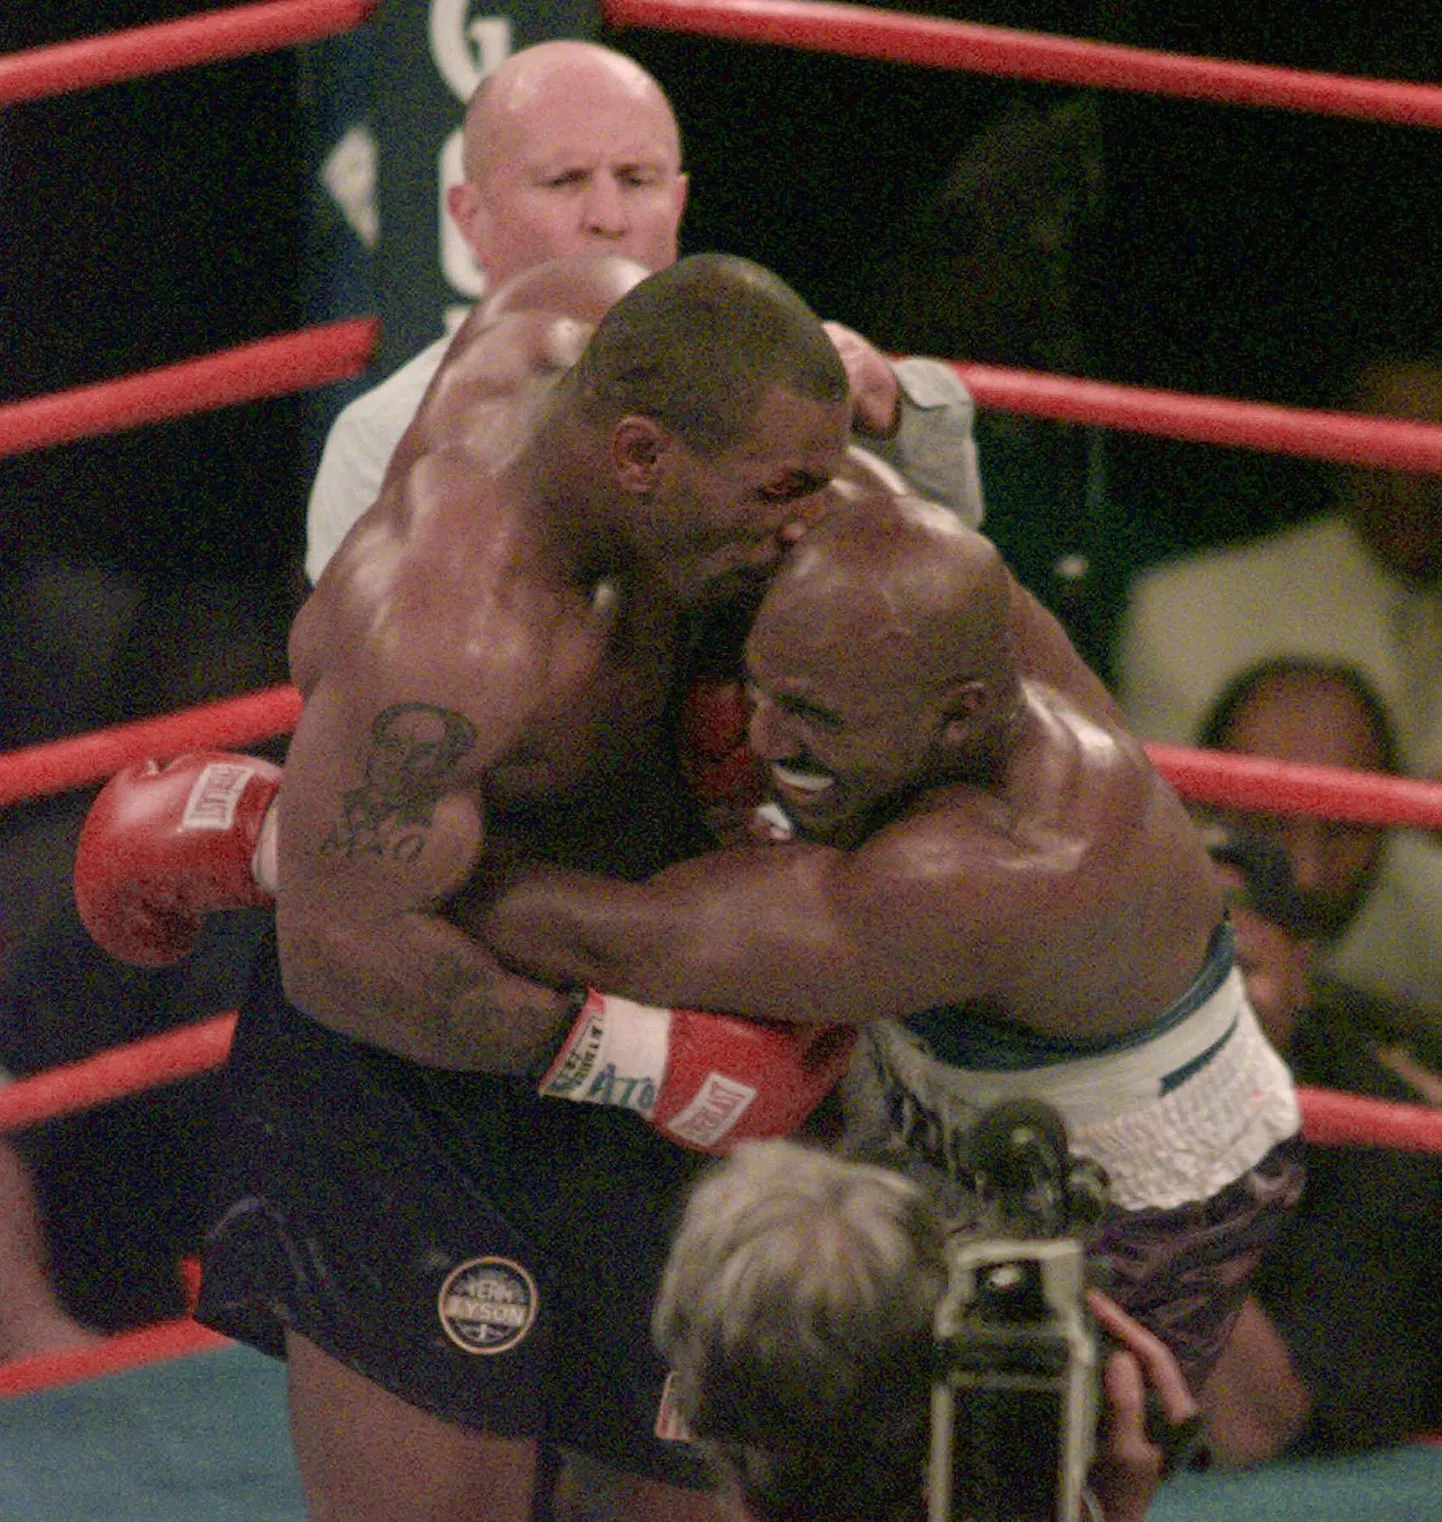 Mike Tyson 23 aastat tagasi poksi MM-tiitlimatšis hammustamas Evander Holyfieldi kõrva.